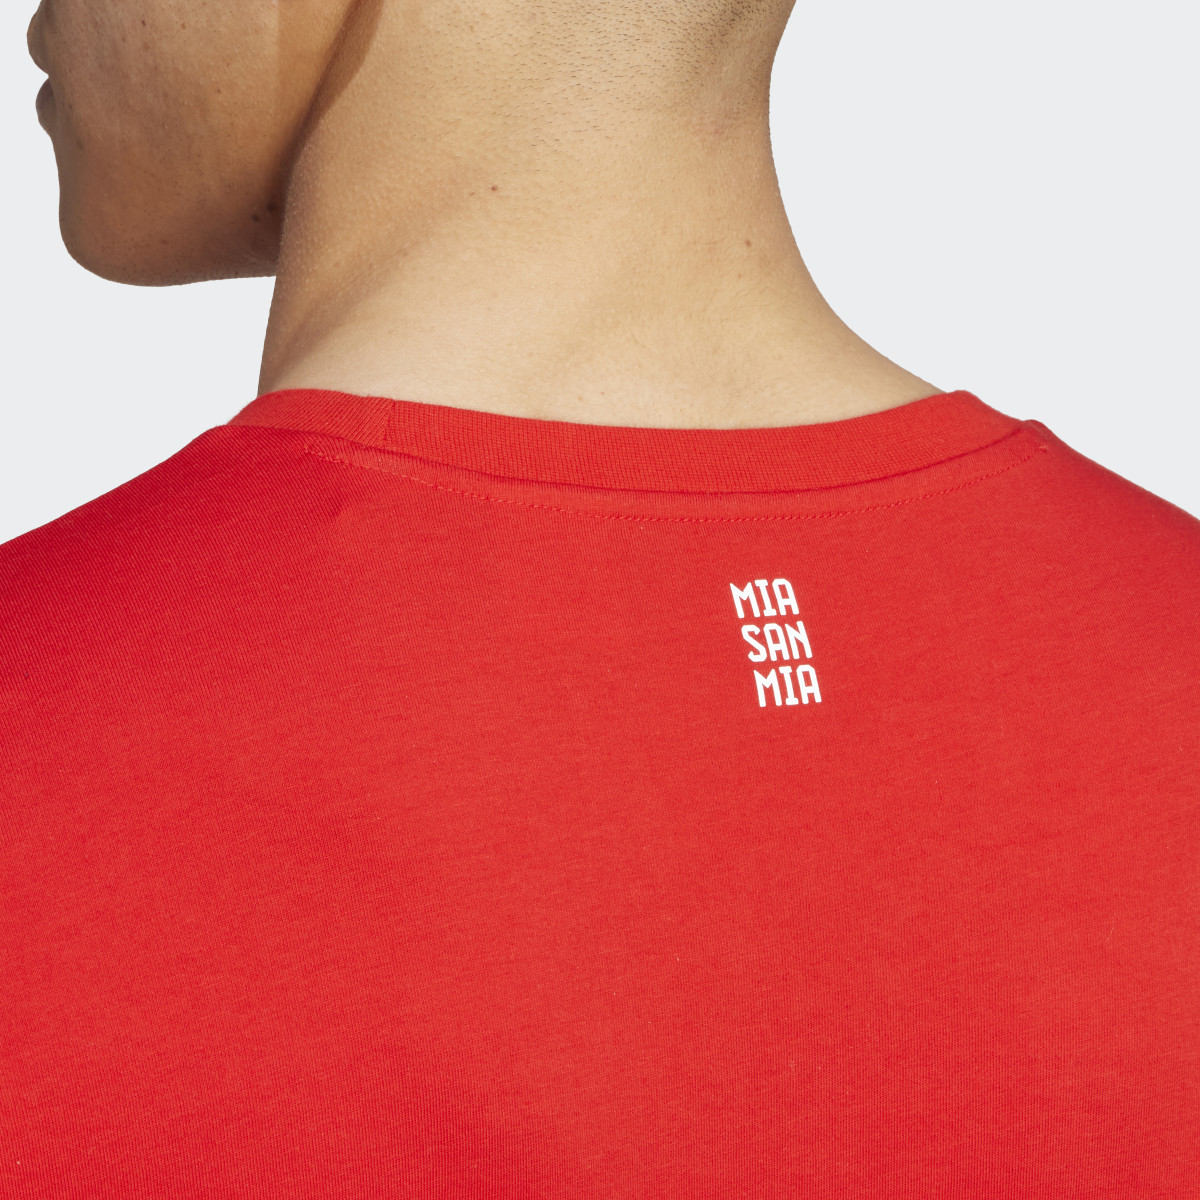 Adidas T-shirt DNA do FC Bayern München. 7